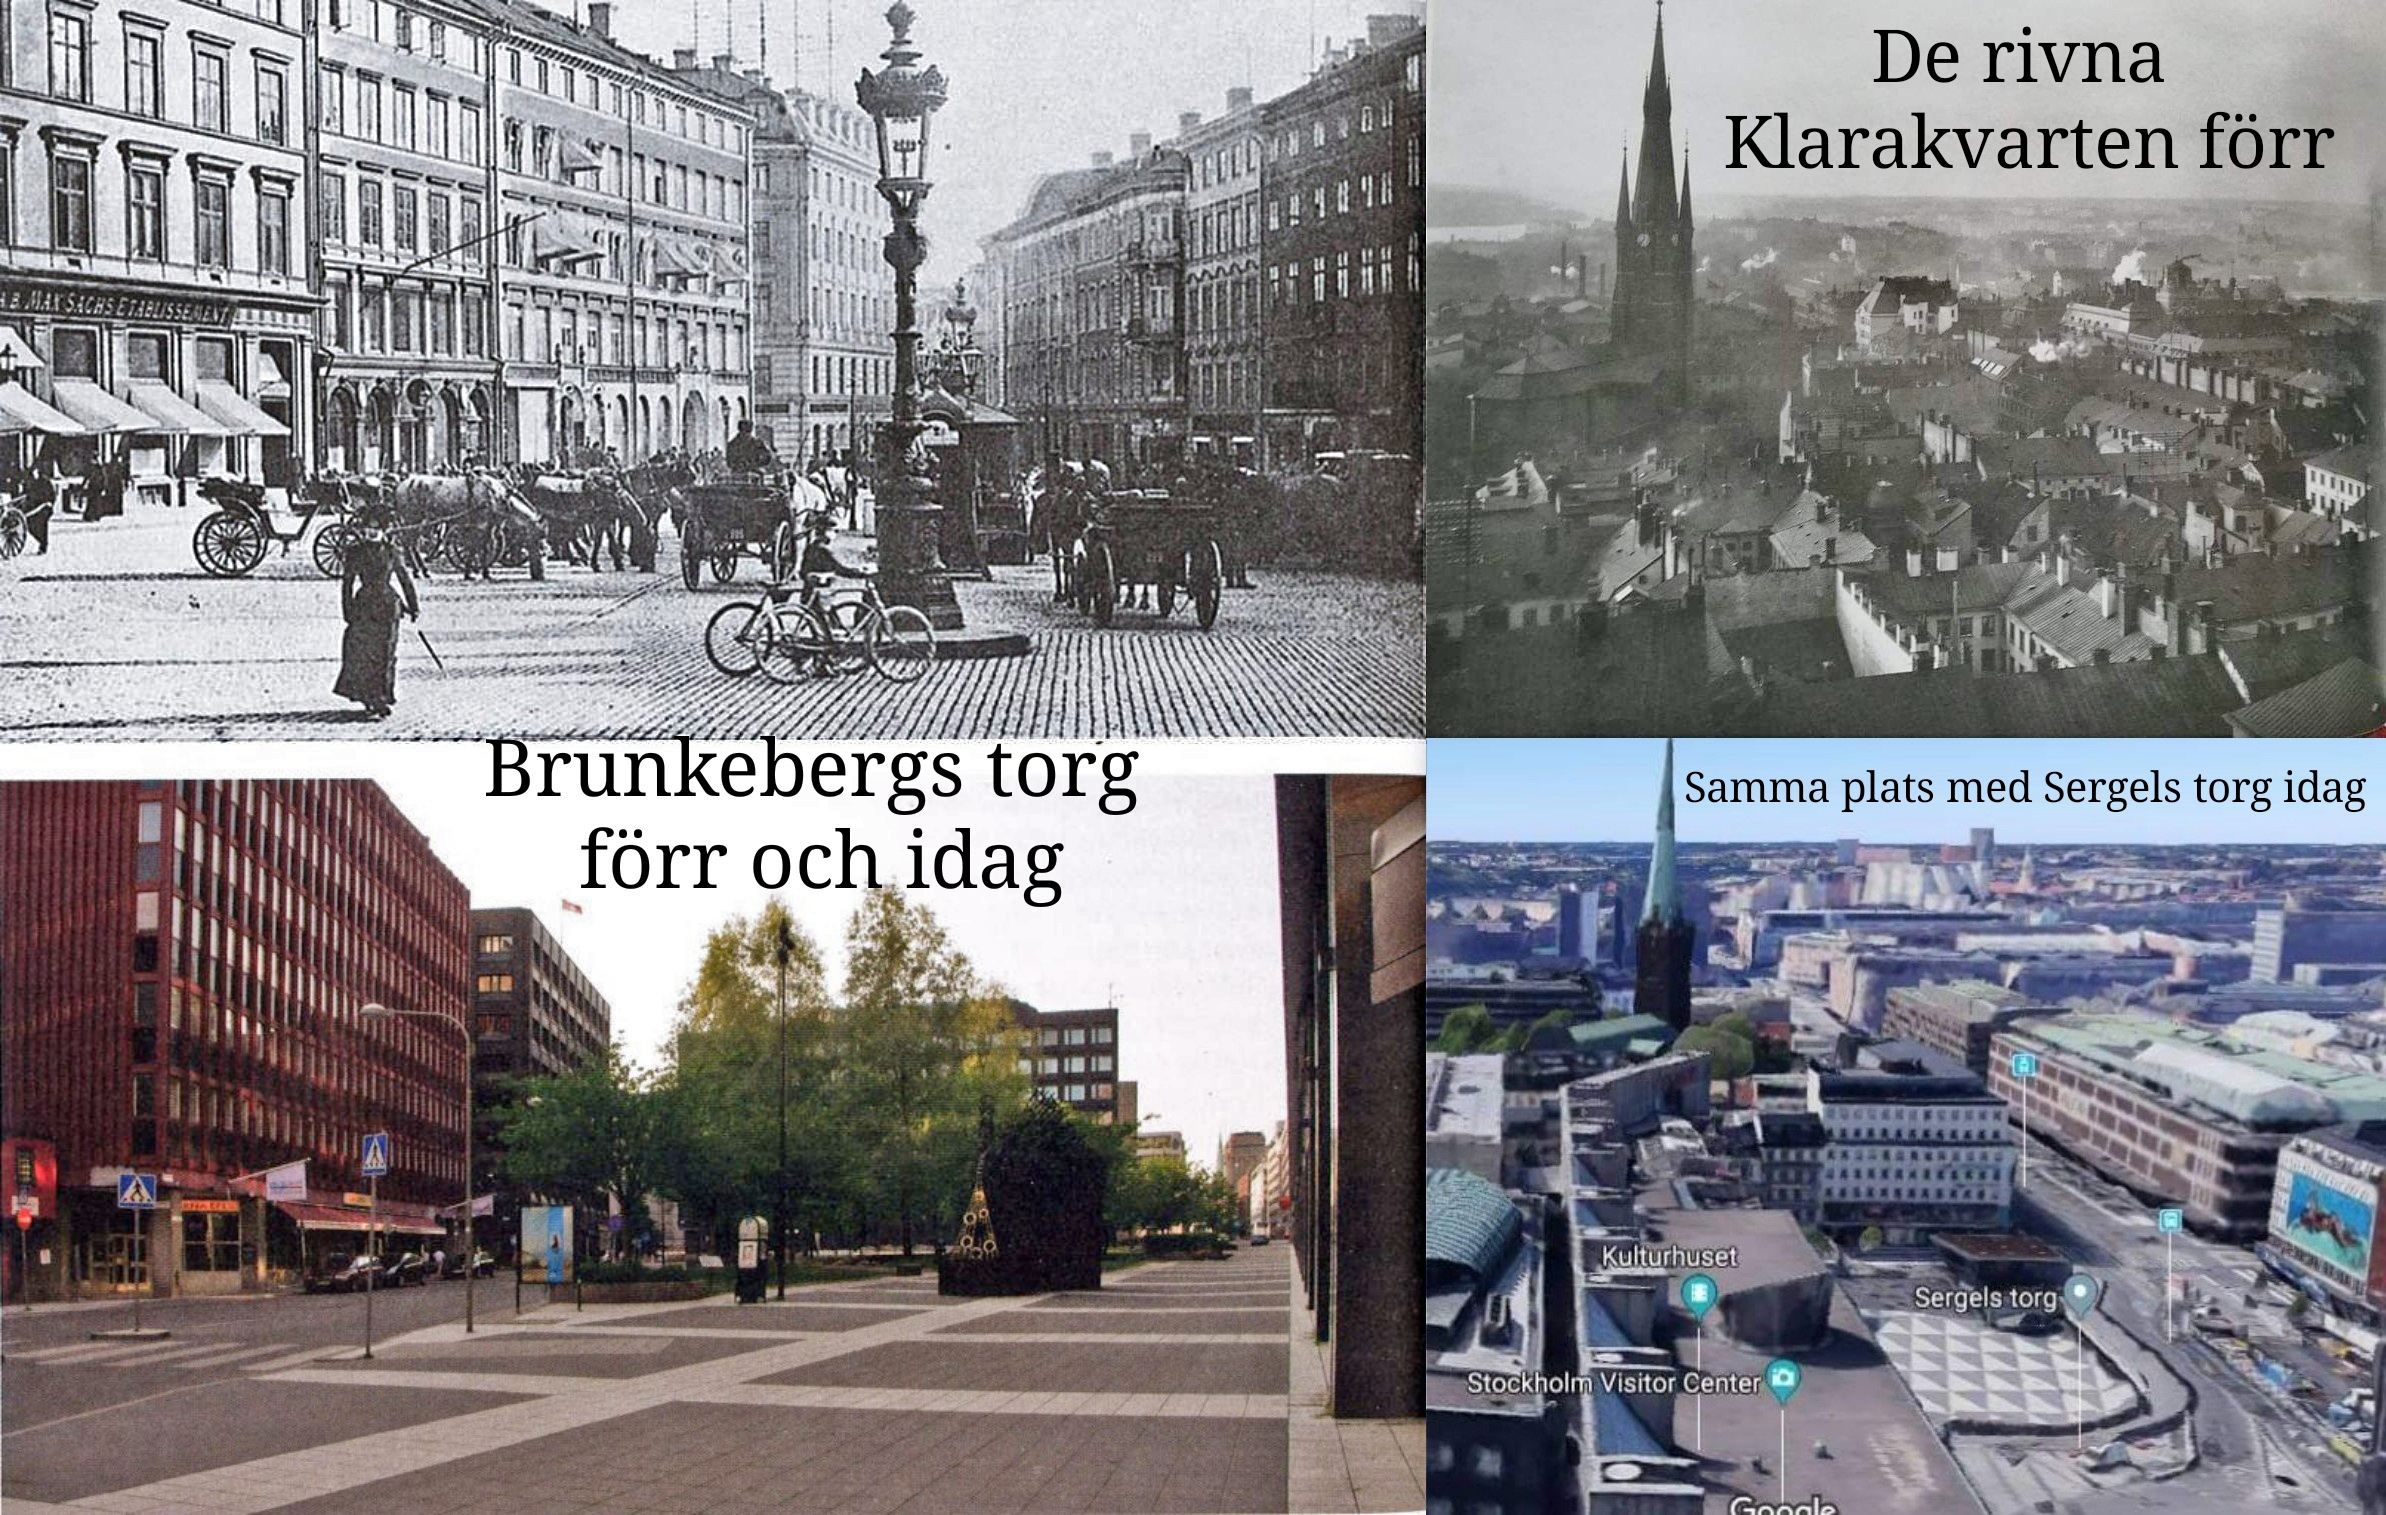 Minuspoäng till Stockholm. Brunkebergs torg var kanske Sveriges vackraste torg innan alla husen revs. Samtidigt fick vi Sergels torg när Klarakvarteren förintades i massiva rivningar